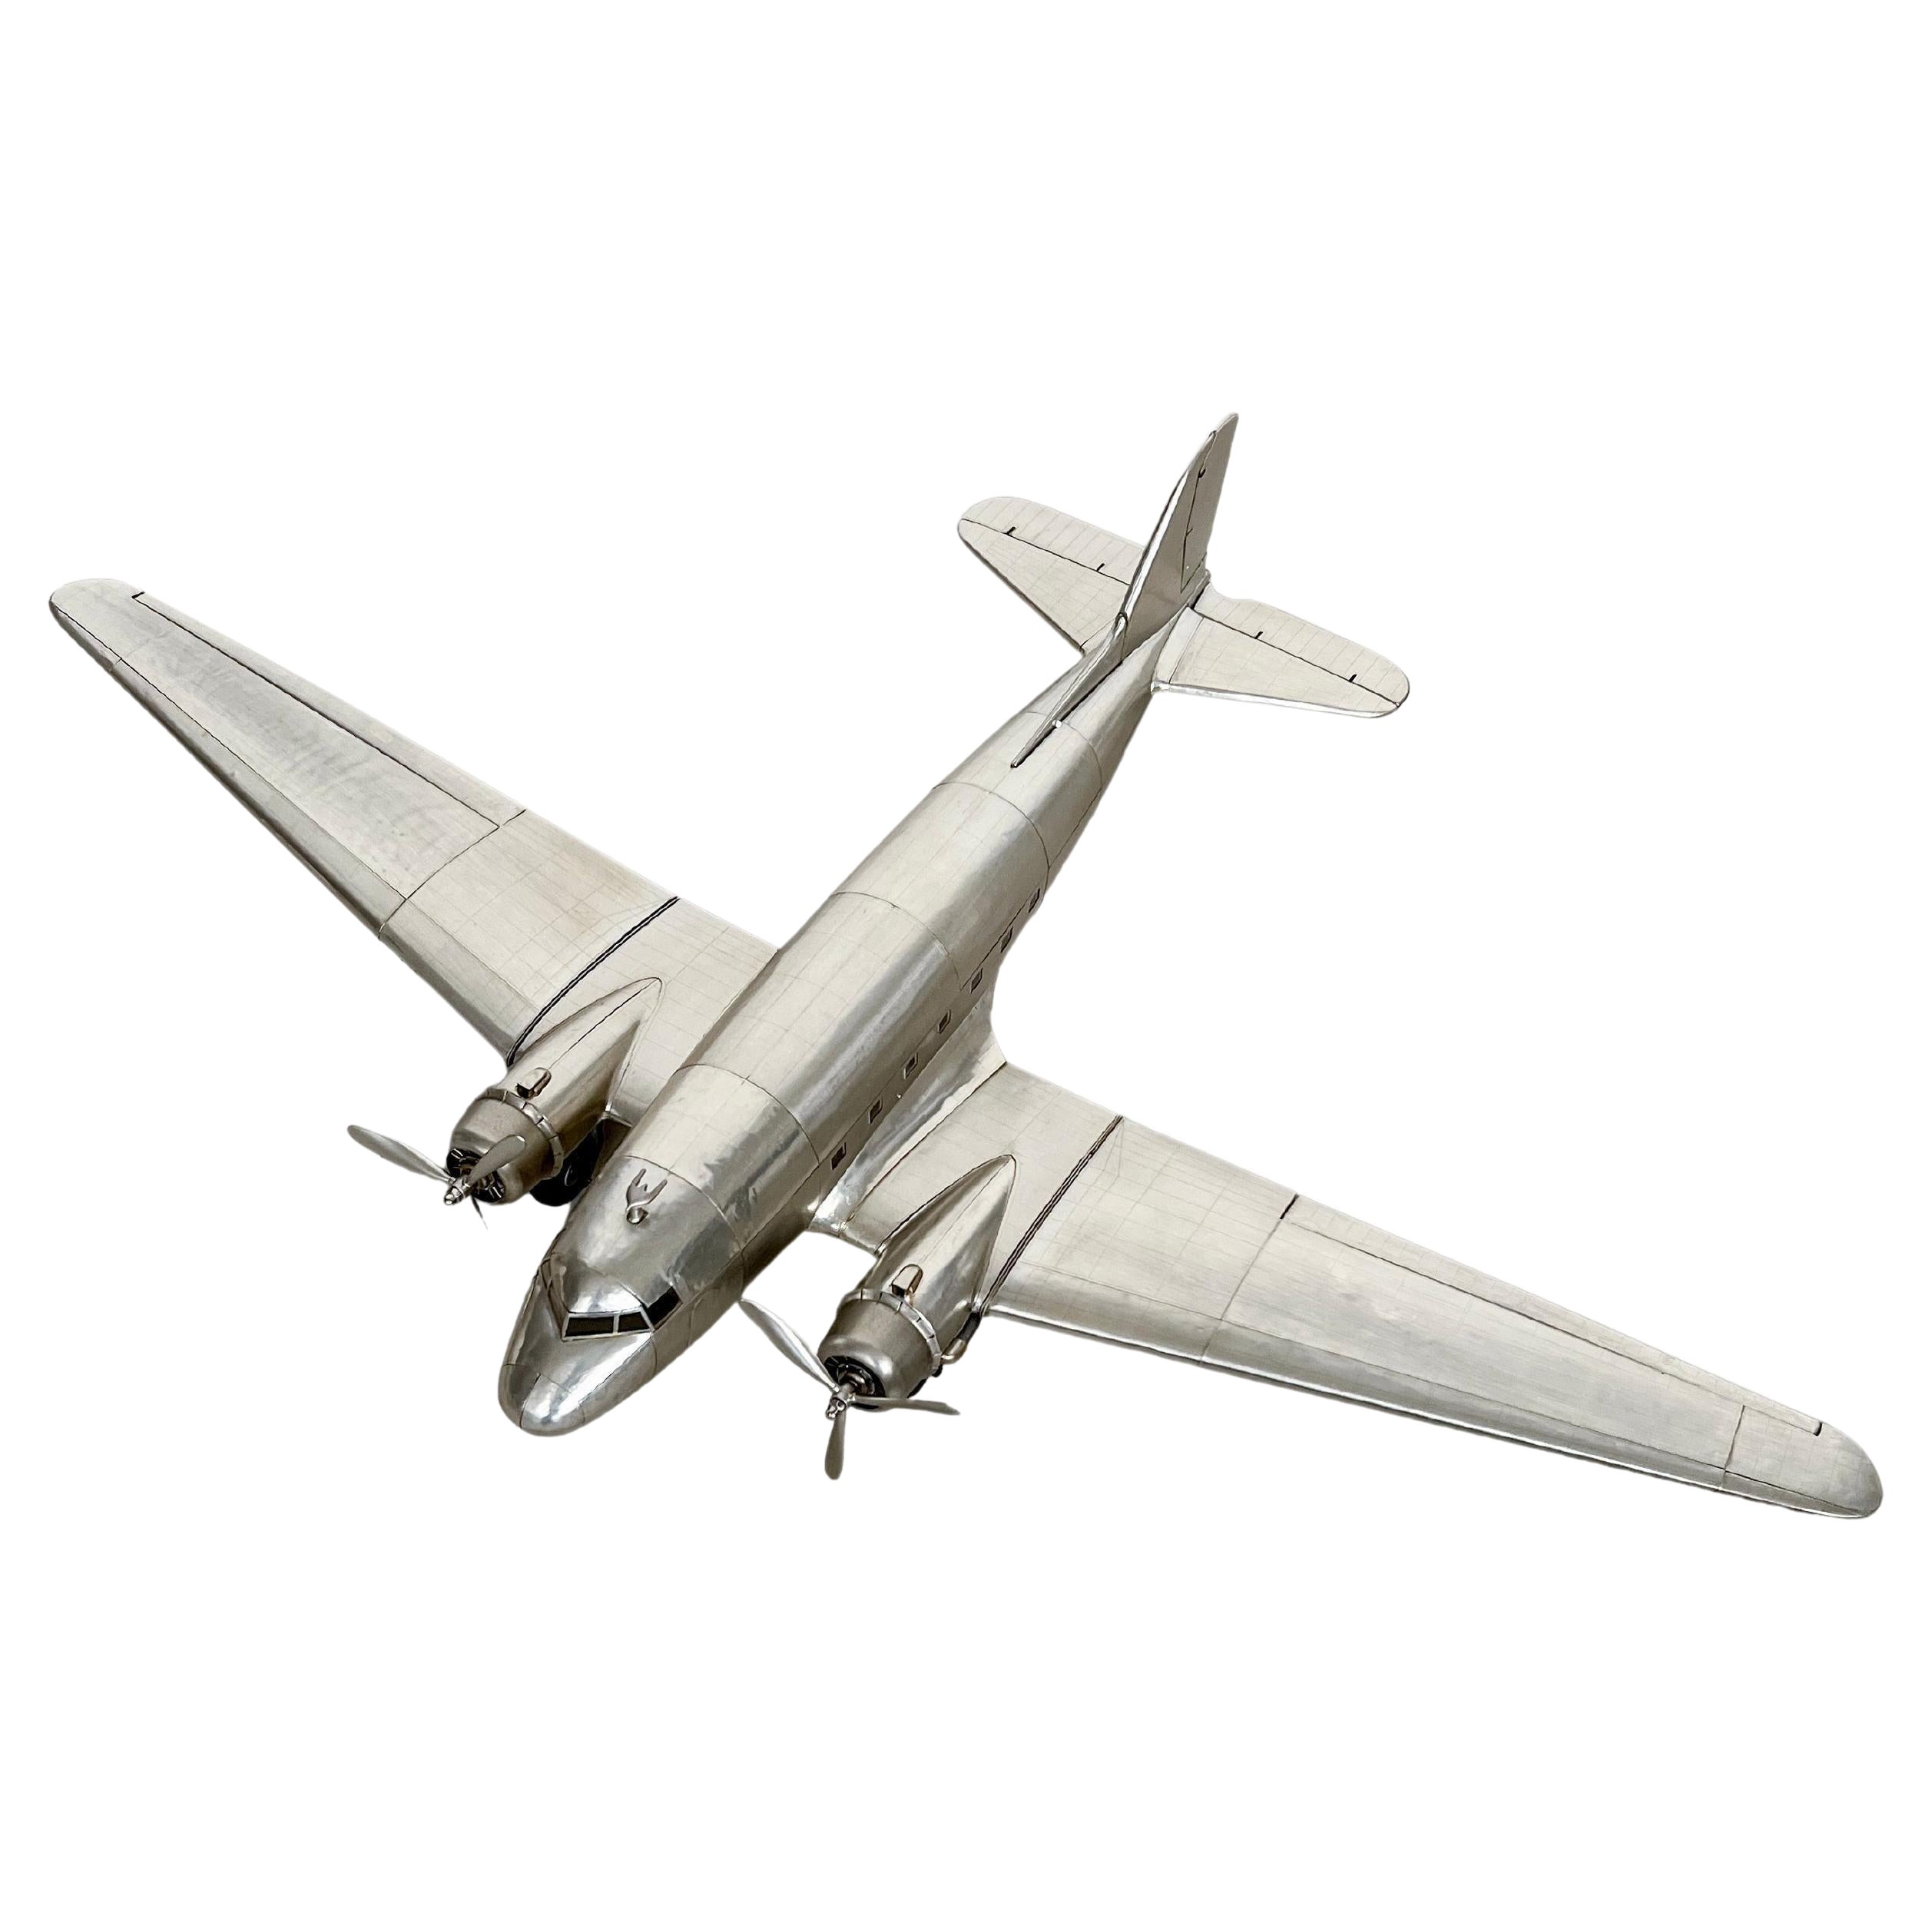 Douglas Dc-3 Aircraft Modell, groß, reichhaltig detailliert, stromlinienförmiges Metallflugzeug